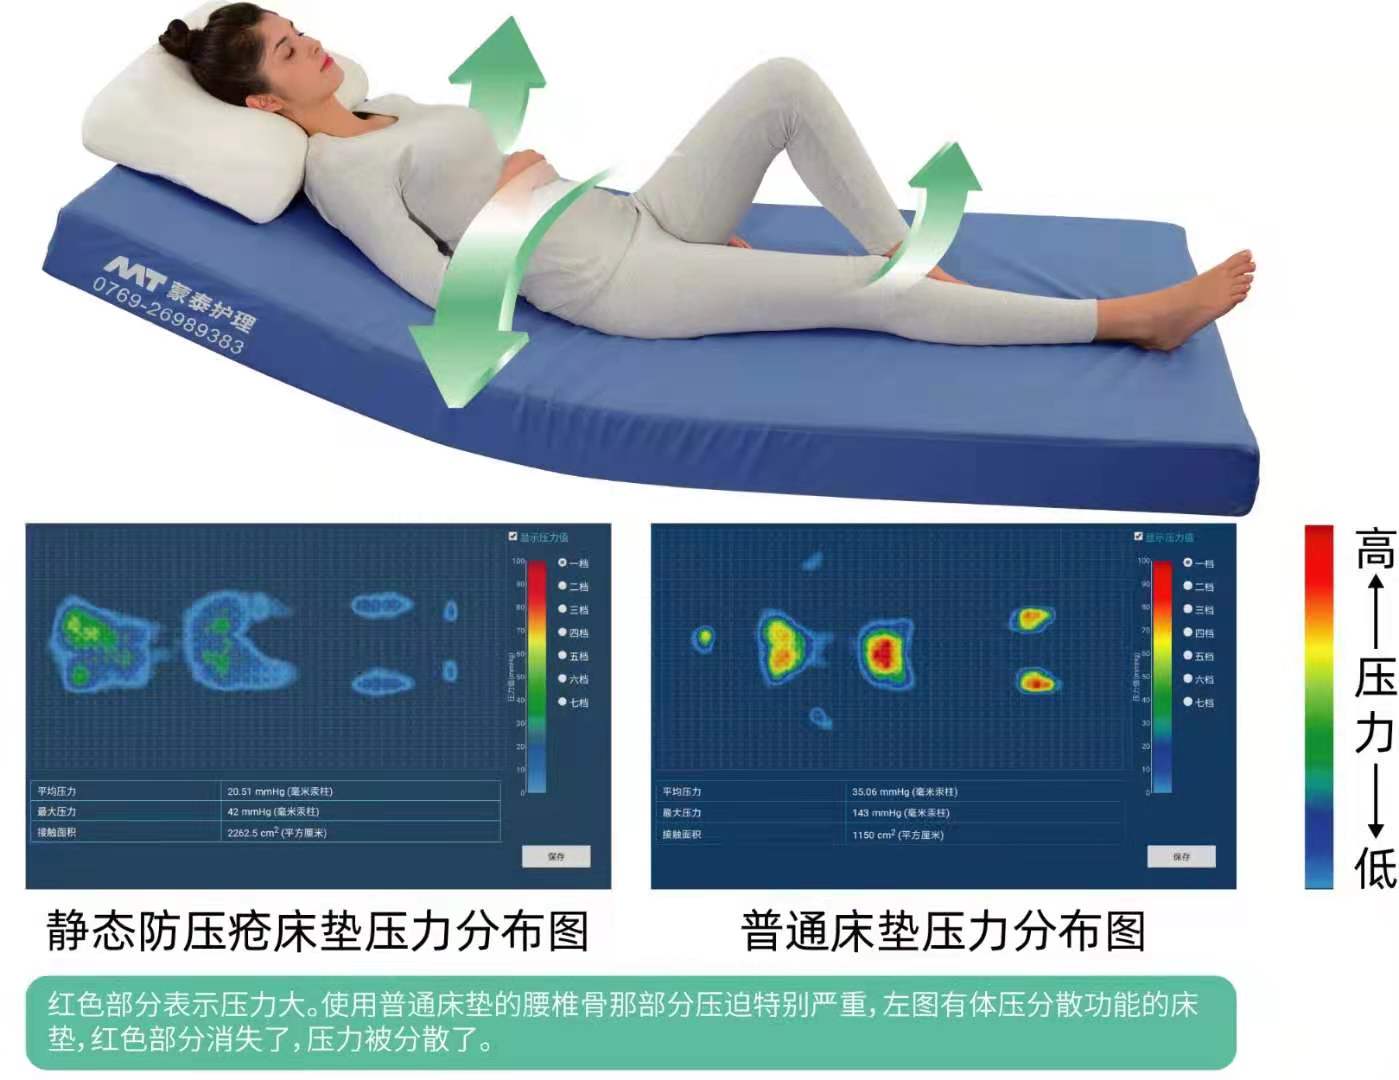 防褥疮床垫静态的与动态的有哪些区别？